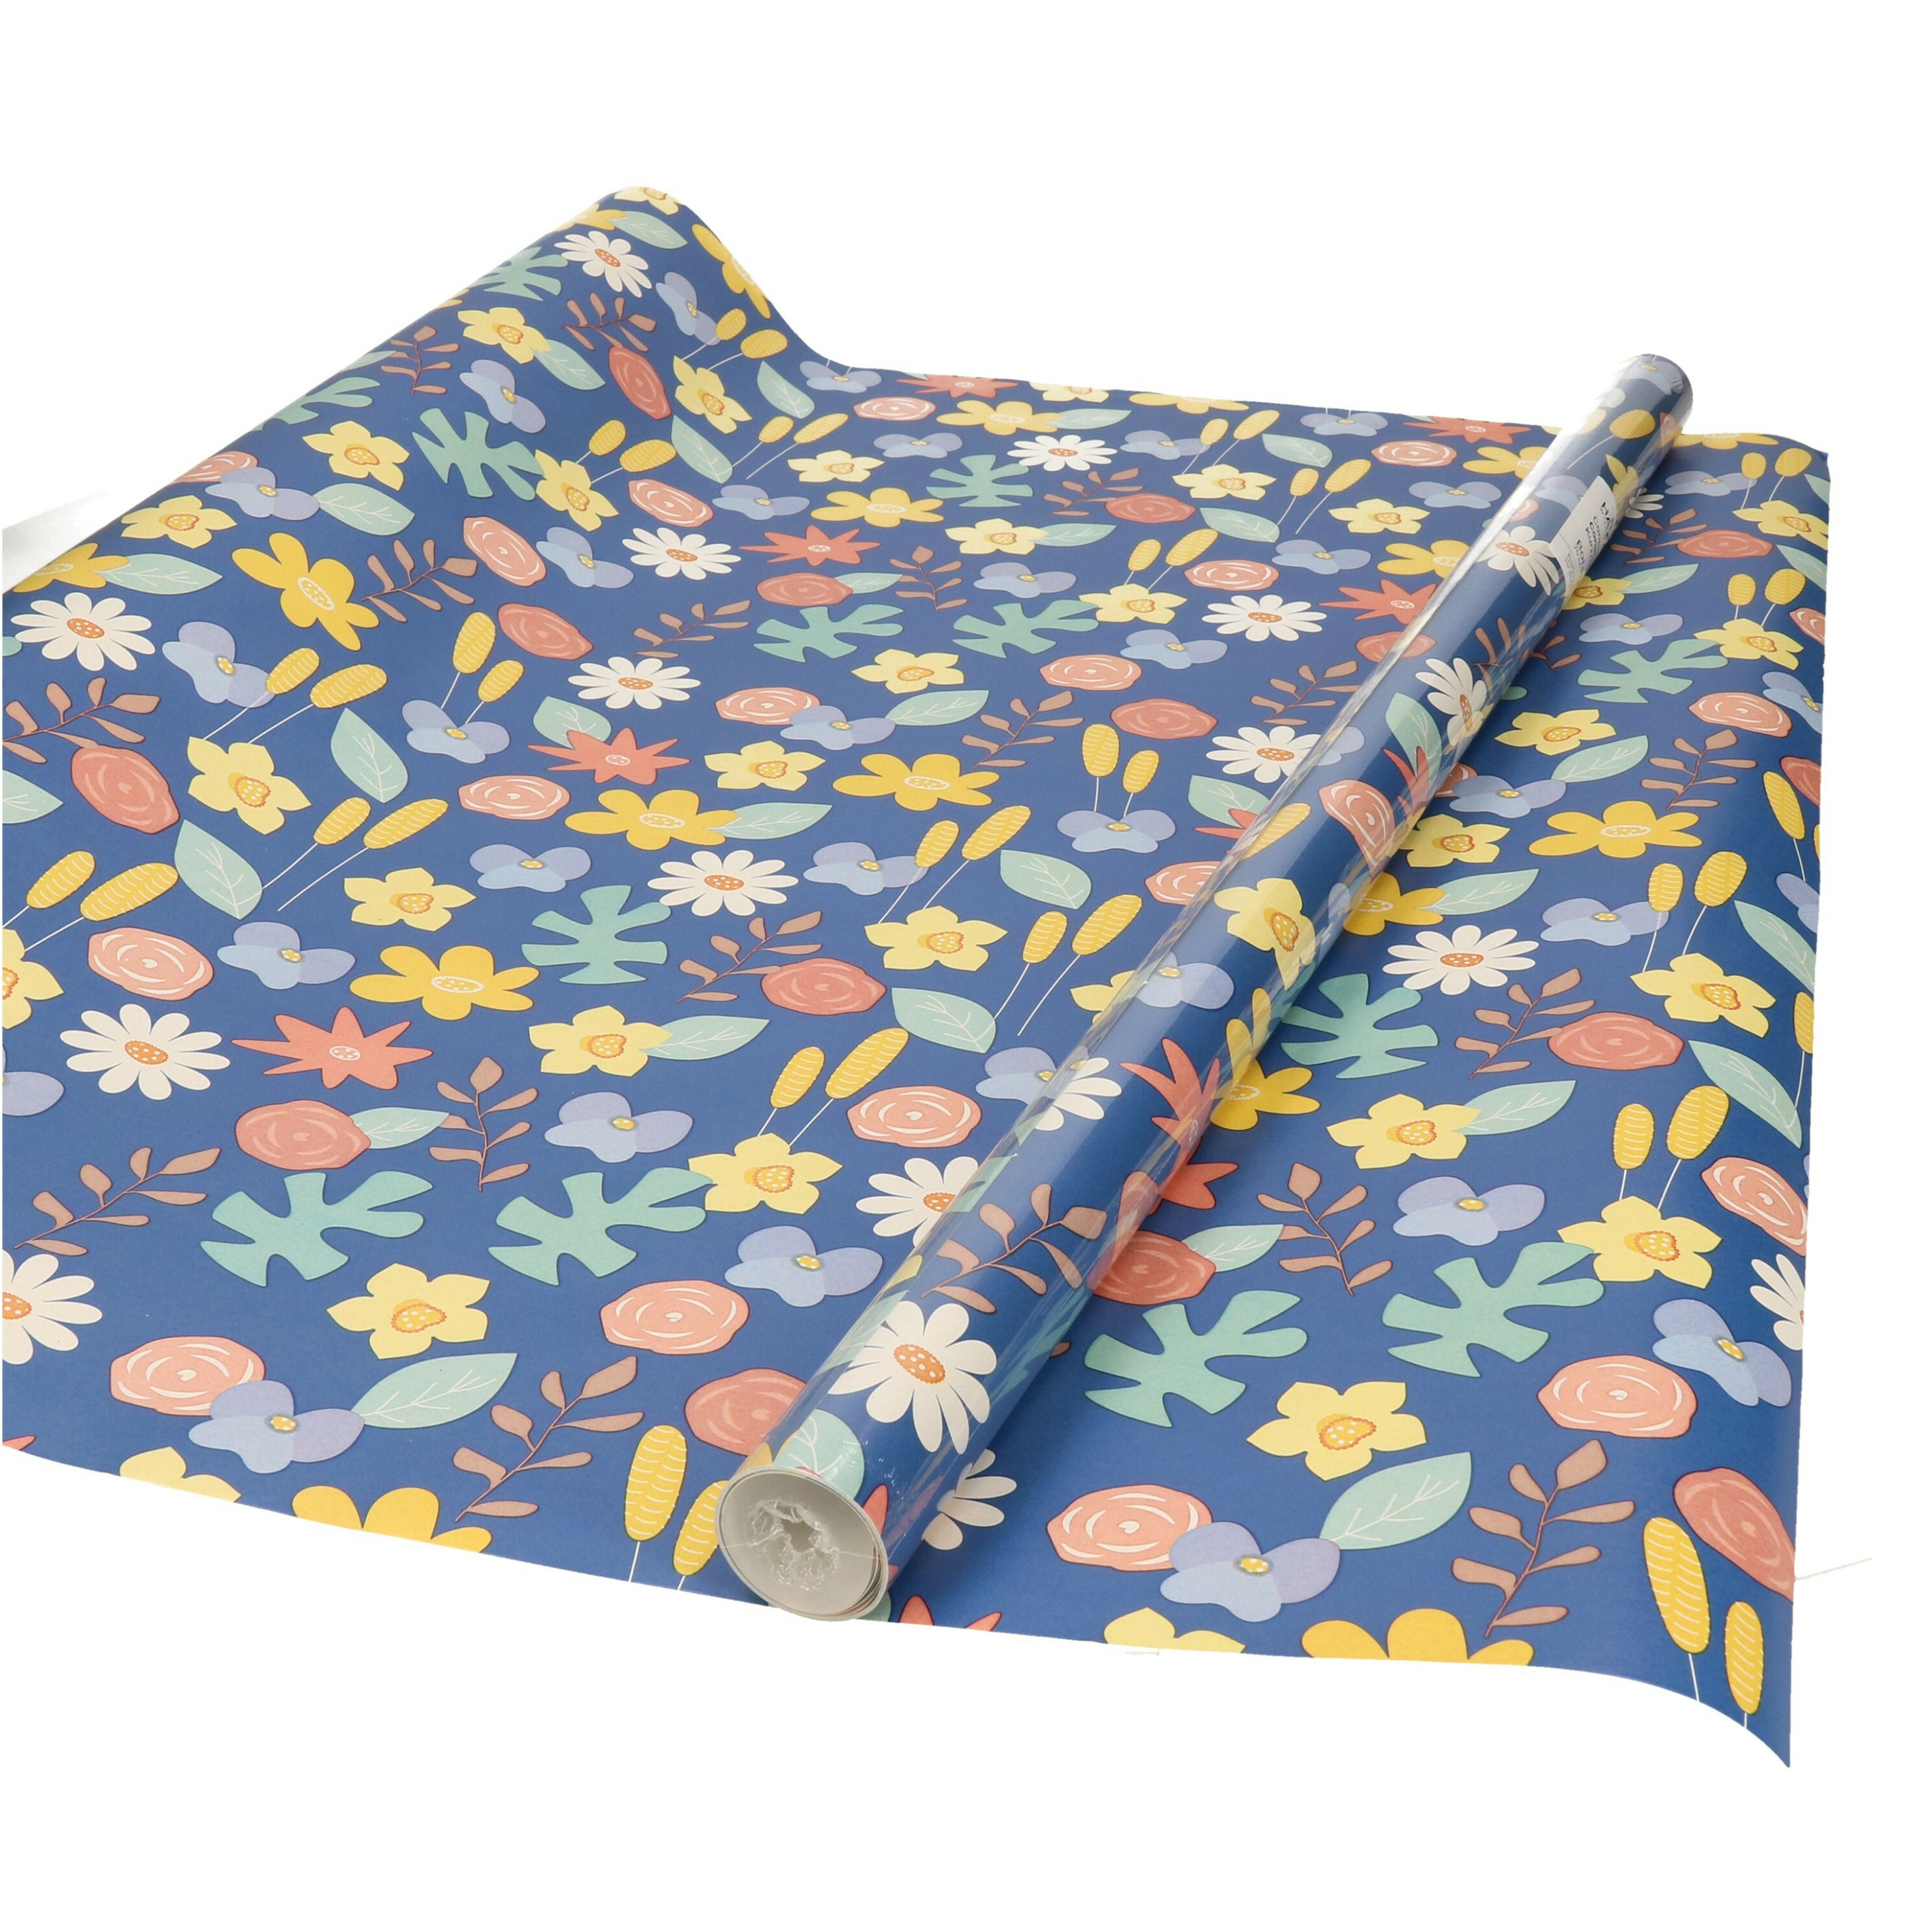 Inpakpapier/cadeaupapier - blauw met gekleurde bloemen design - 200 x 70 cm